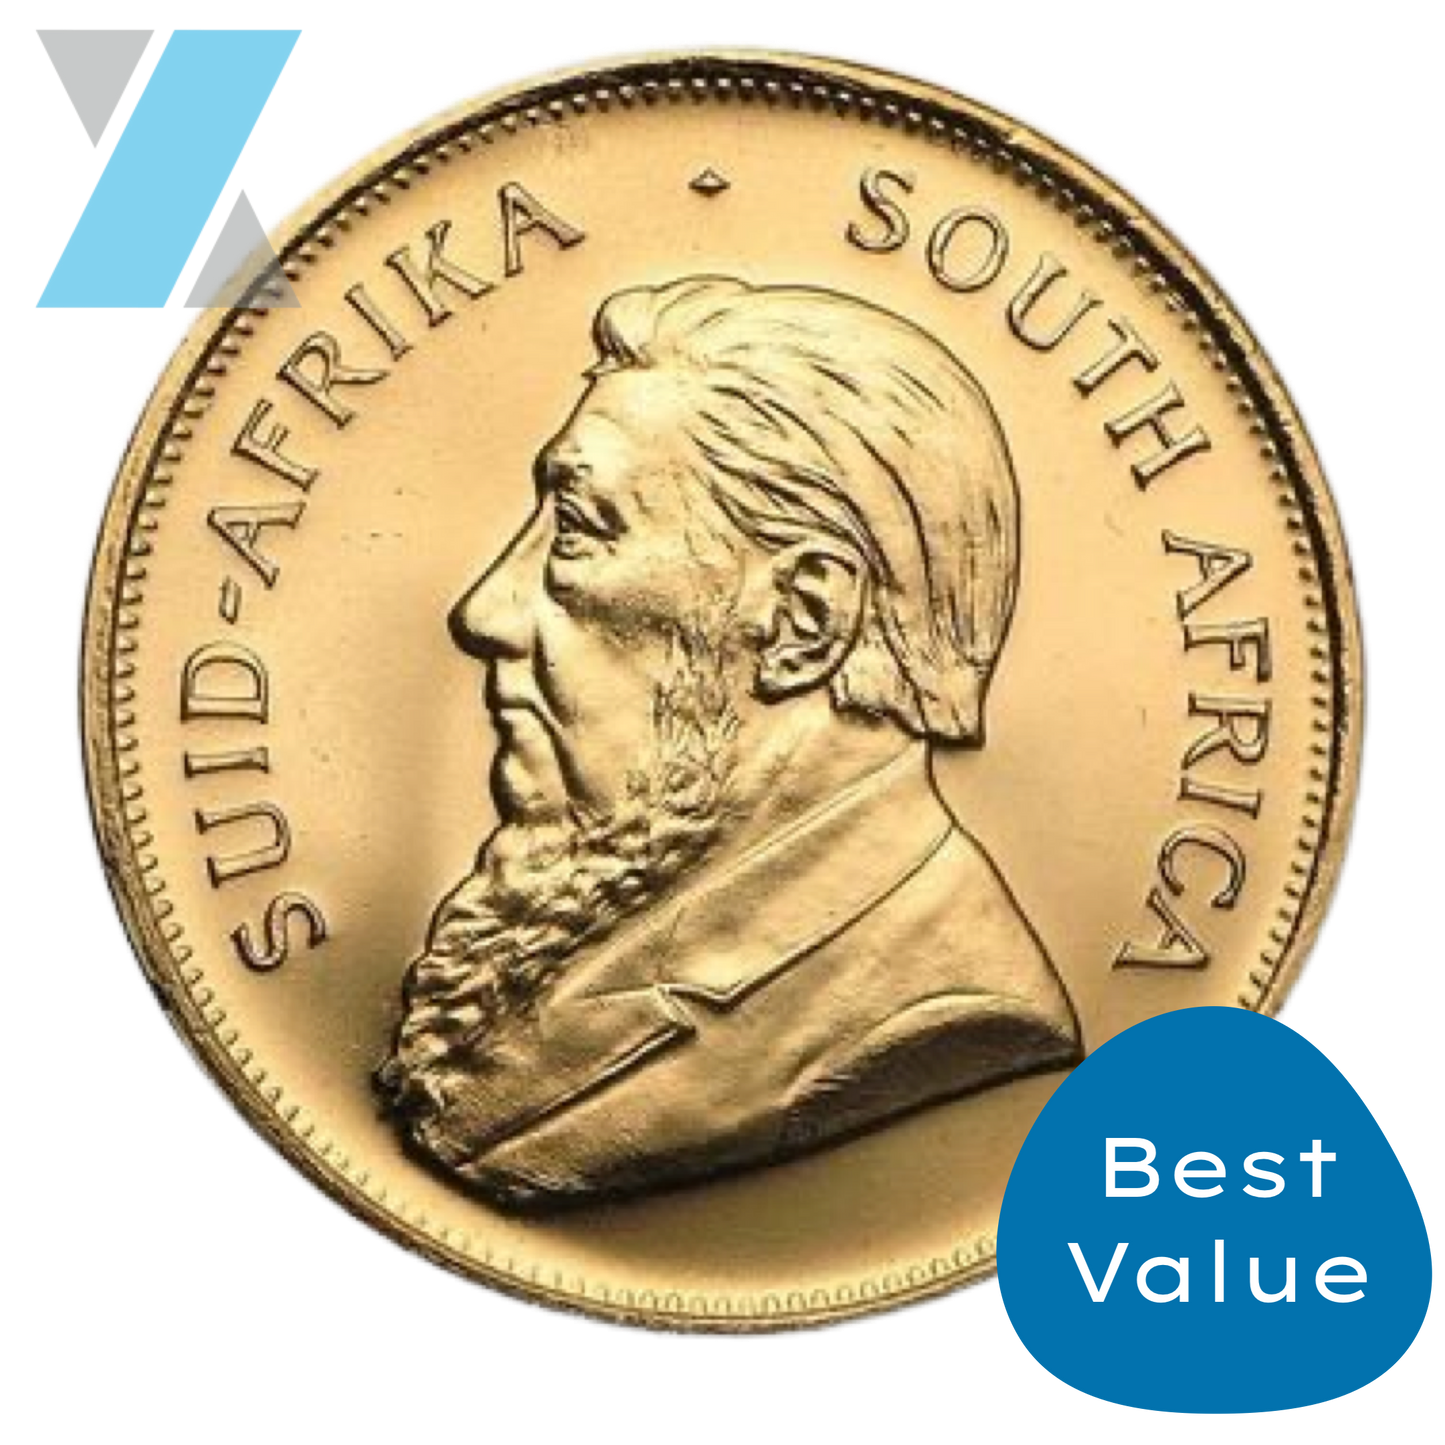 Best Value - 1oz Gold Krugerrand